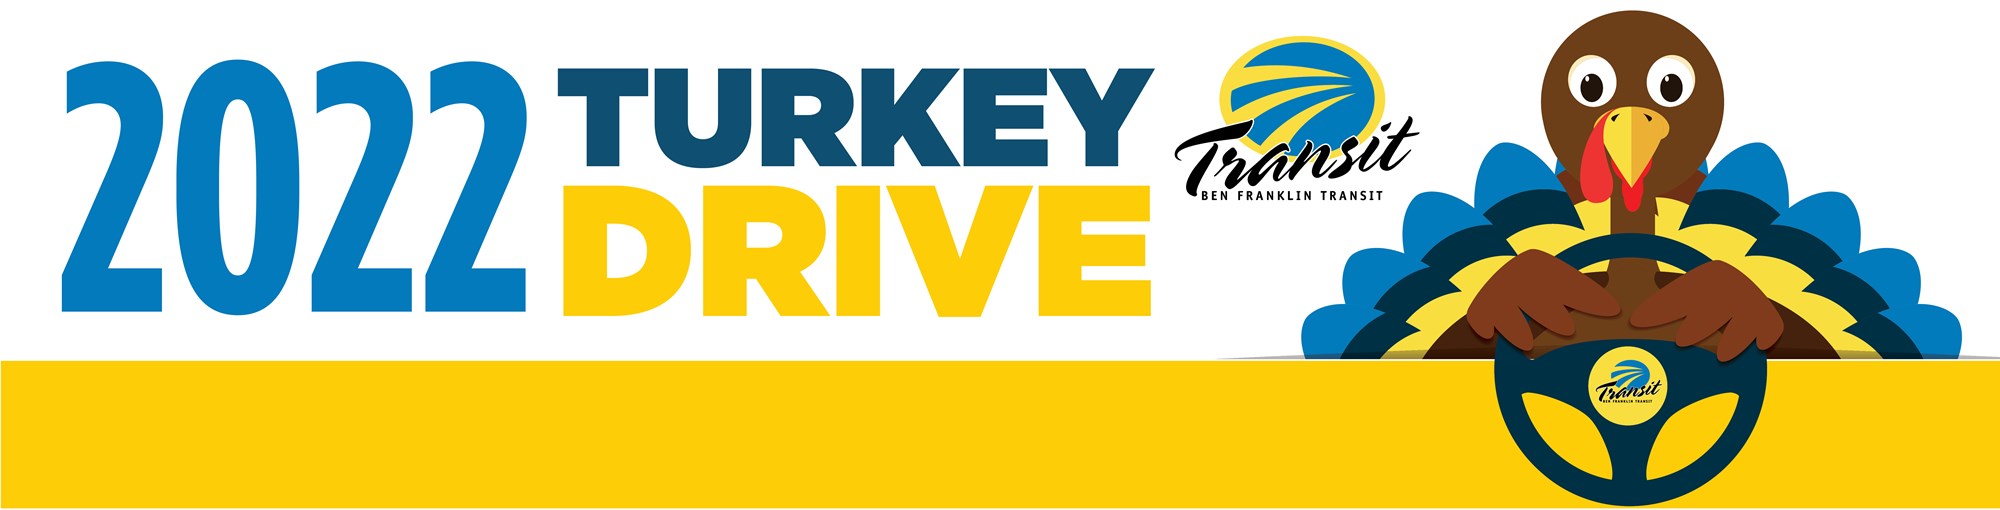 Turkey_Drive_Header